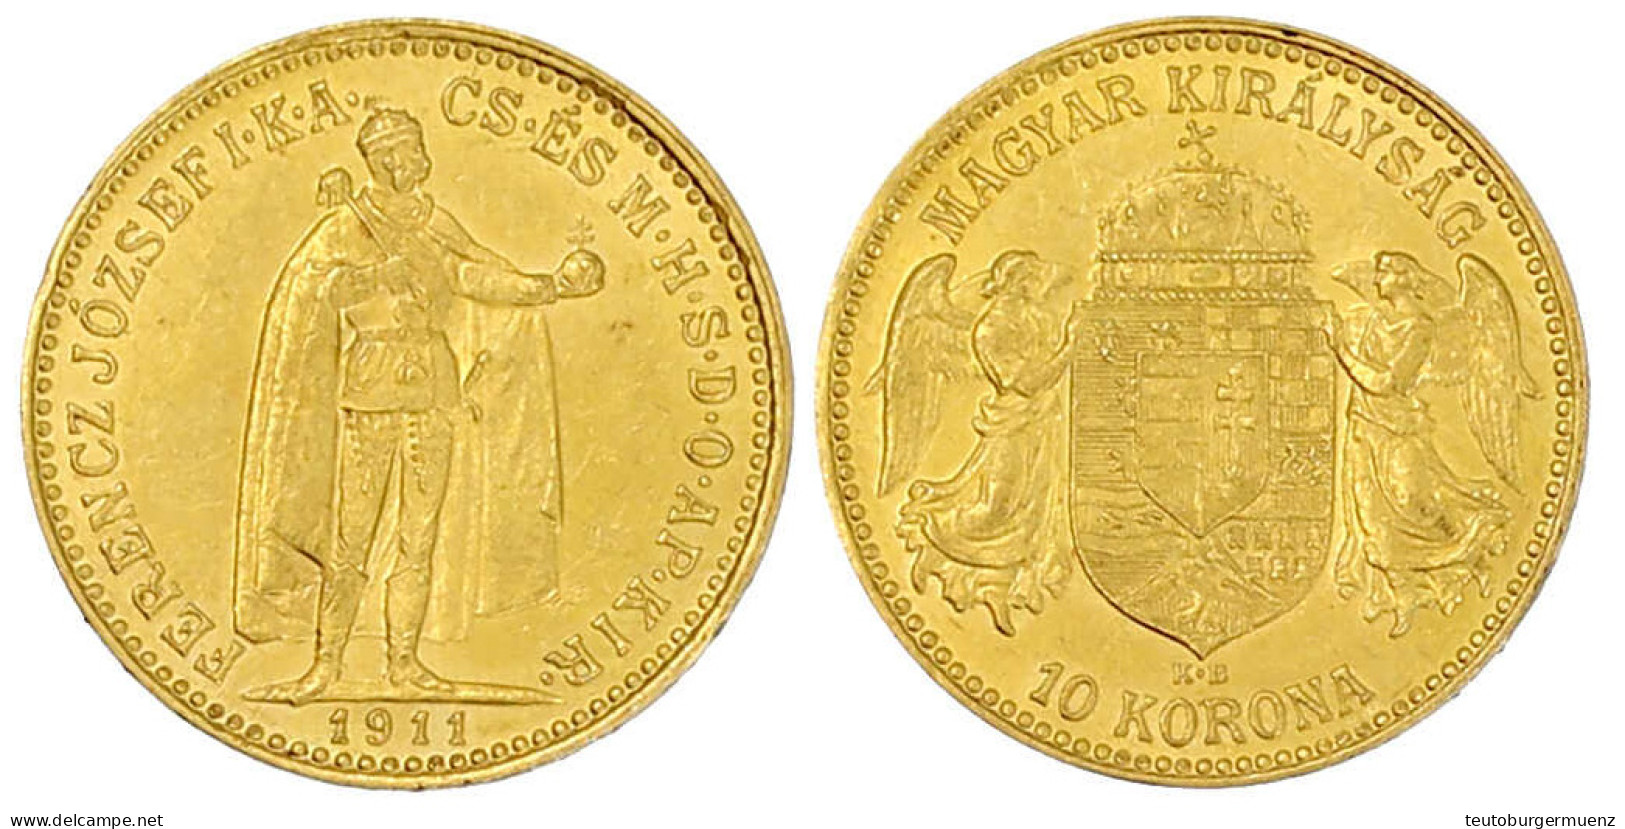 10 Korona 1911 KB. Stehender Herrscher, Ausgabe Für Ungarn. 3,38 G. 900/1000. Gutes Vorzüglich. Herinek 411. Friedberg 2 - Gold Coins